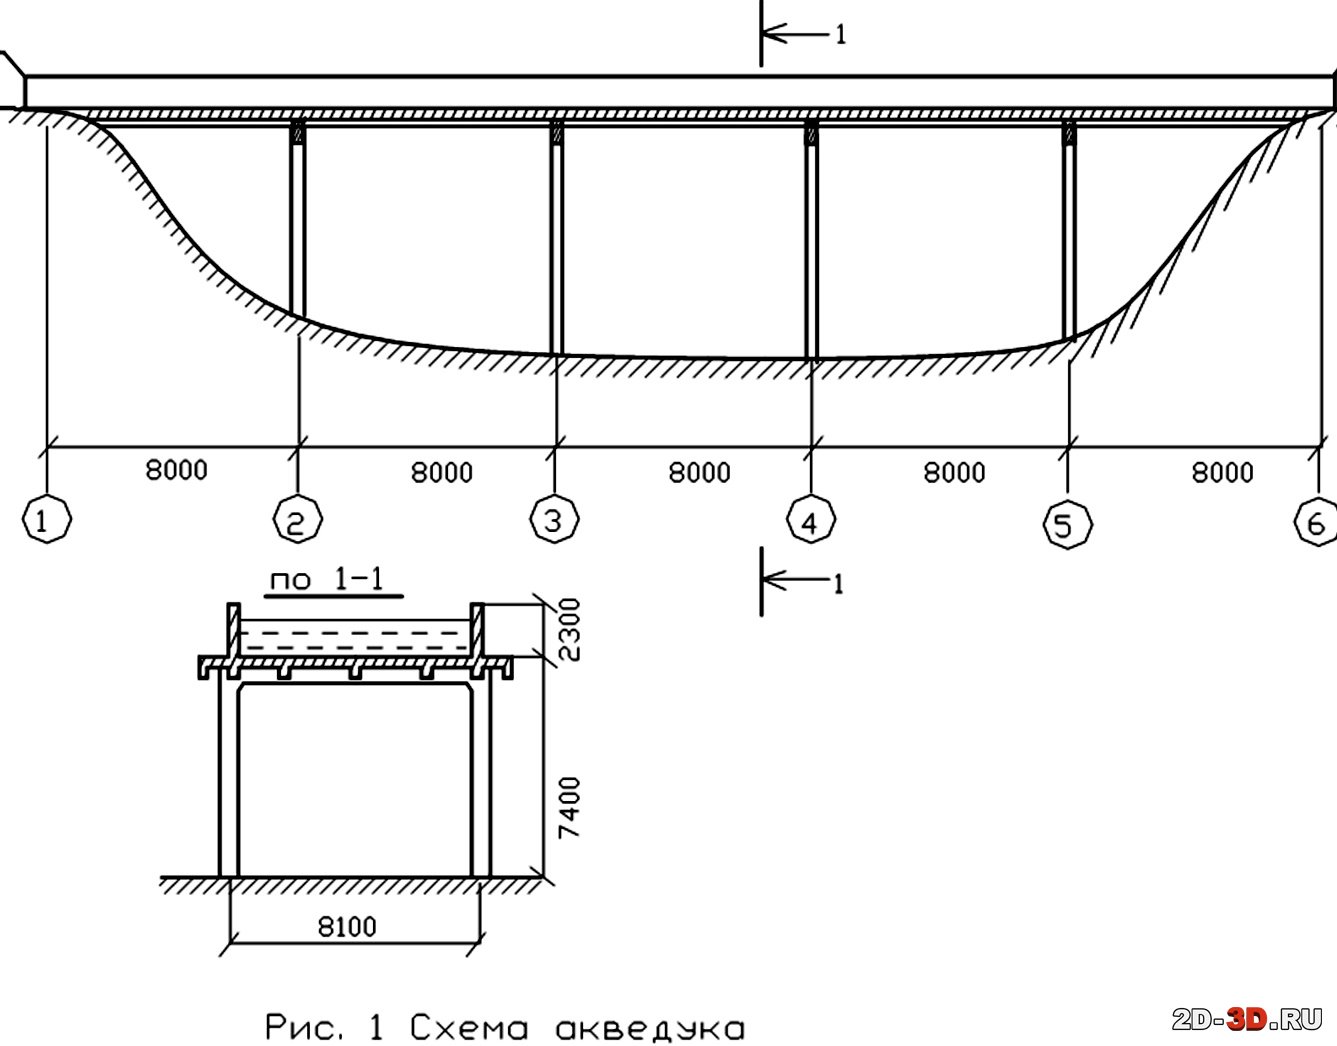 Схема акведука